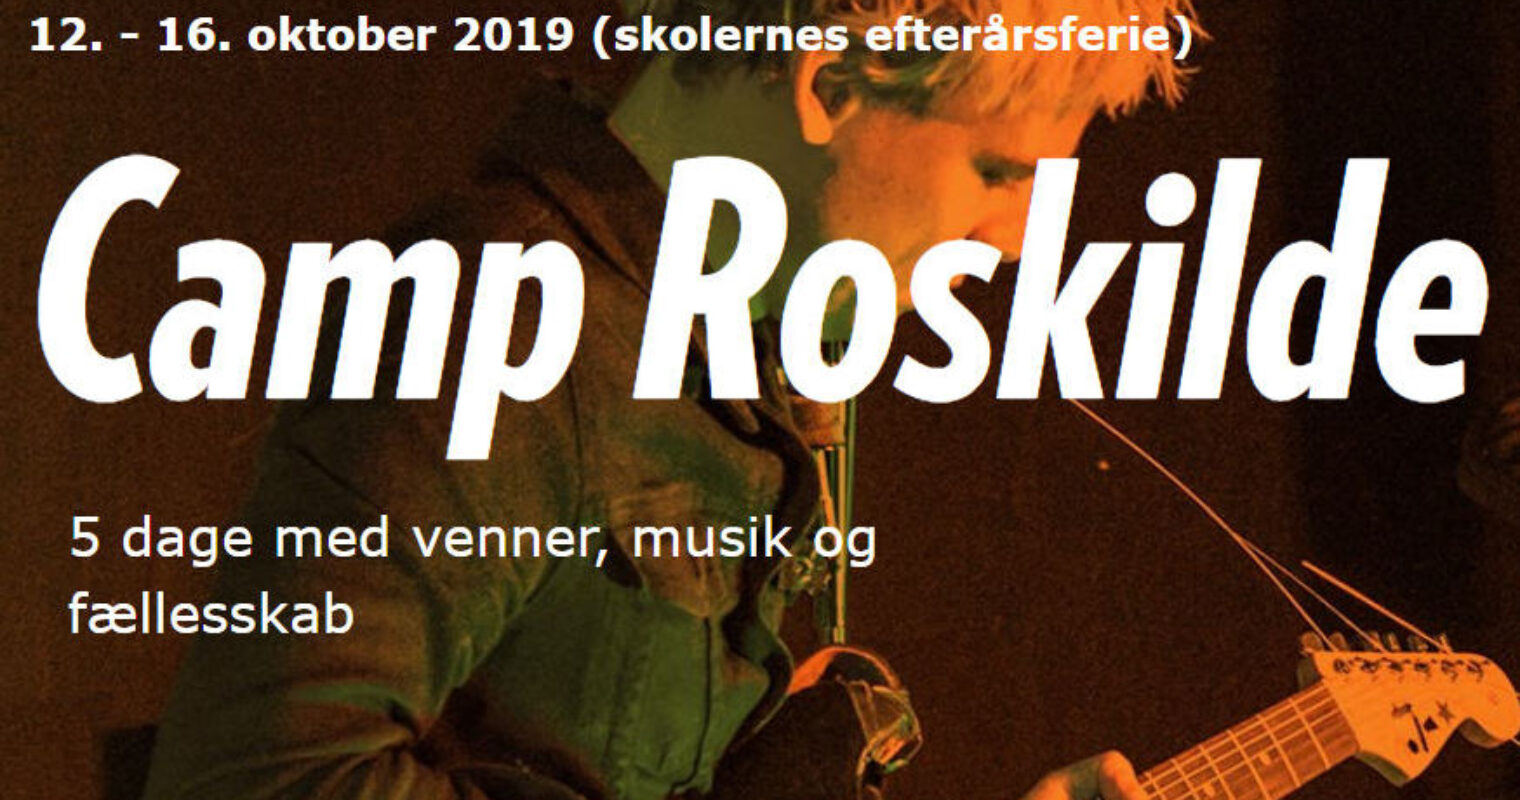 Musikstarter Camp Roskilde i efterårsferien